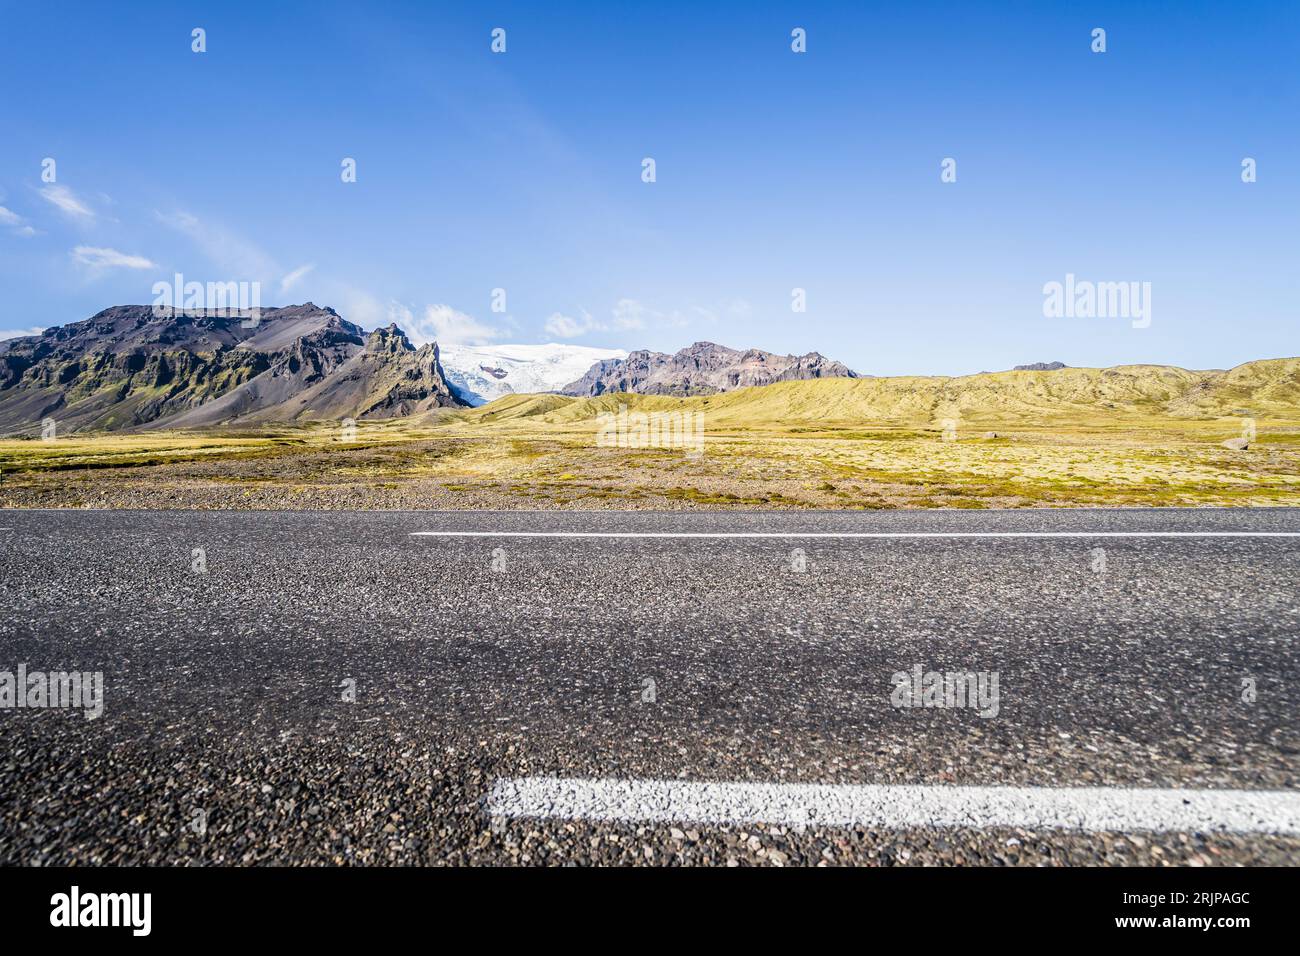 Una vista panoramica di un'autostrada che si snoda attraverso un paesaggio montuoso con colline ondulate visibili in lontananza Foto Stock